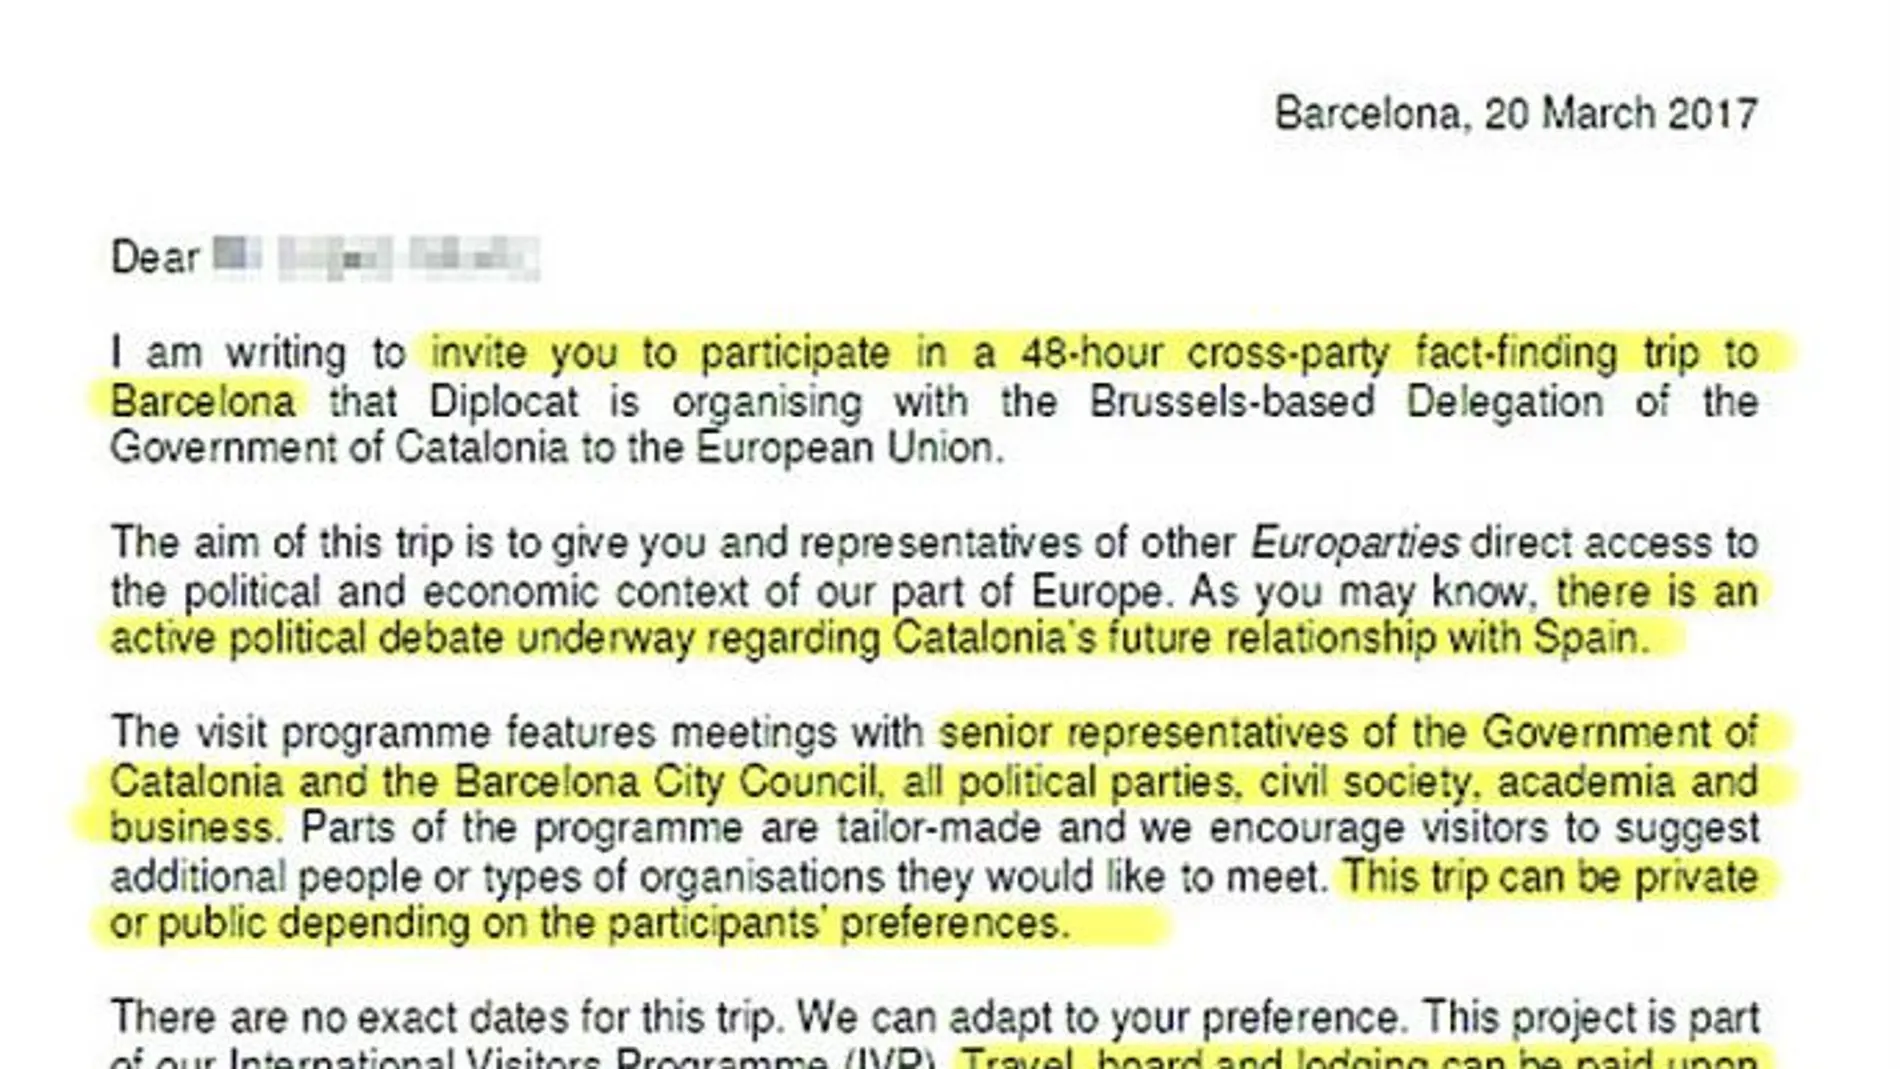 48 horas en Barcelona con gastos pagados. En la misiva se les invita a un «viaje de 48 horas a Barcelona que «Diplocat» está organizando con «la delegación de la Generalitat de Cataluña con sede en Bruselas».